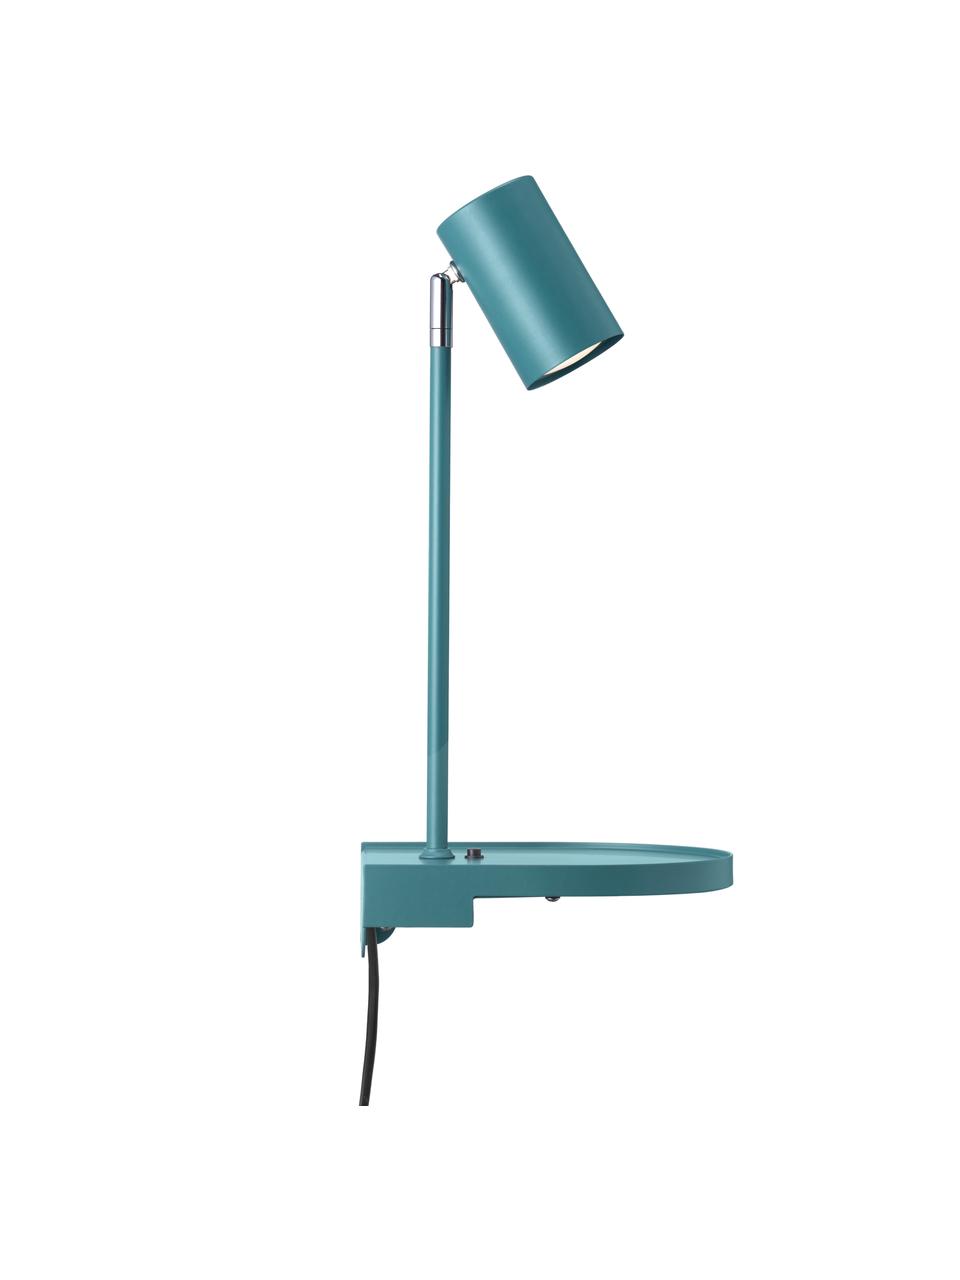 Grote verstelbare wandlamp Colly met stekker en USB aansluiting, Lampenkap: gecoat metaal, Turquoise, 20 x 43 cm